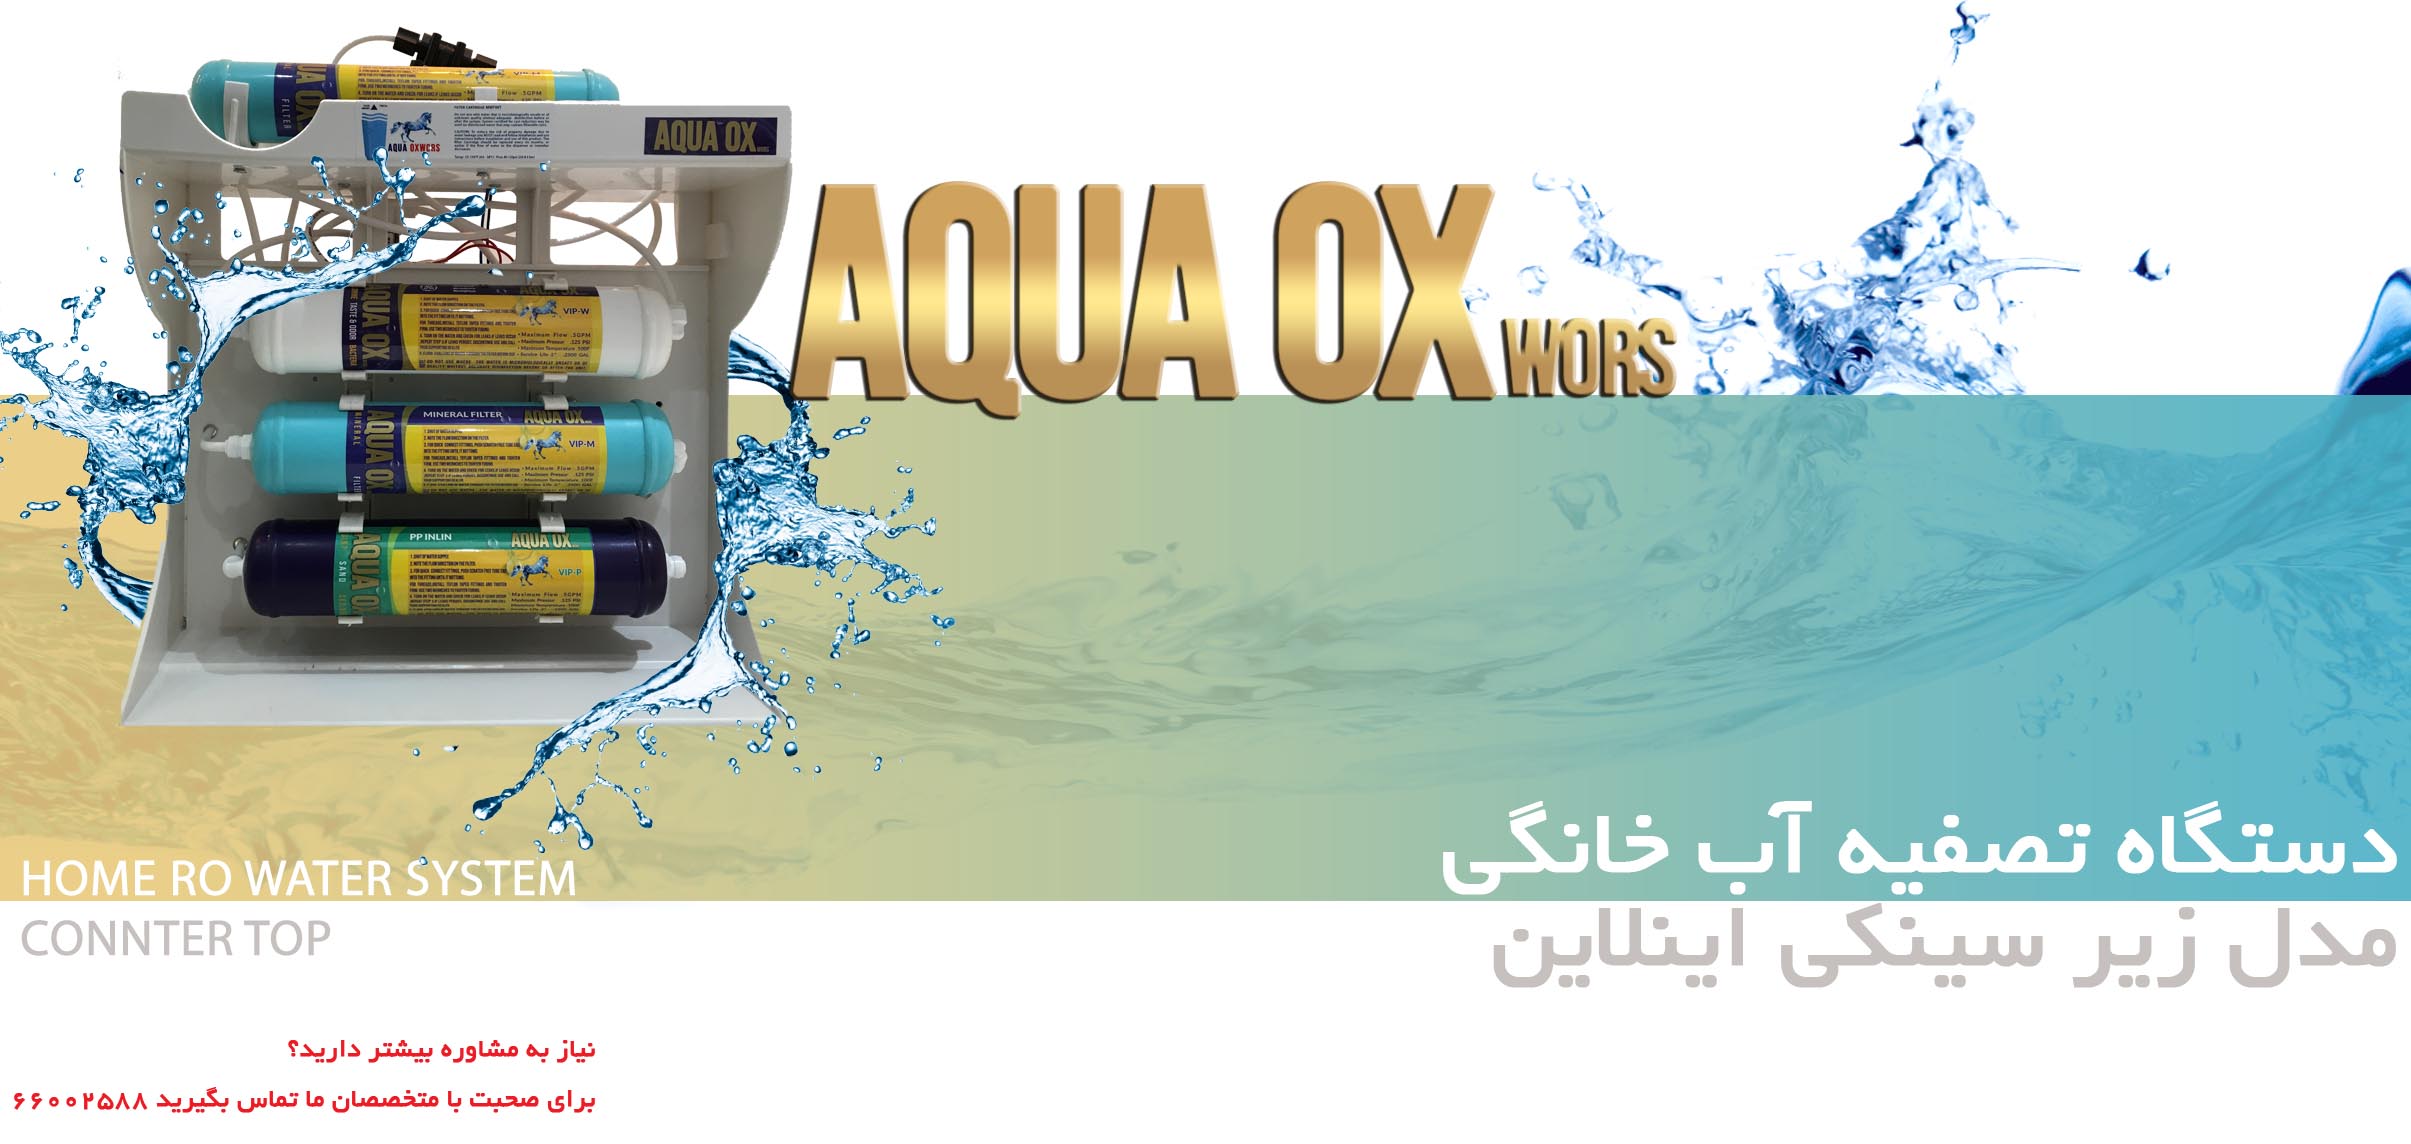 دستگاه تصفیه آب  AQUA OX